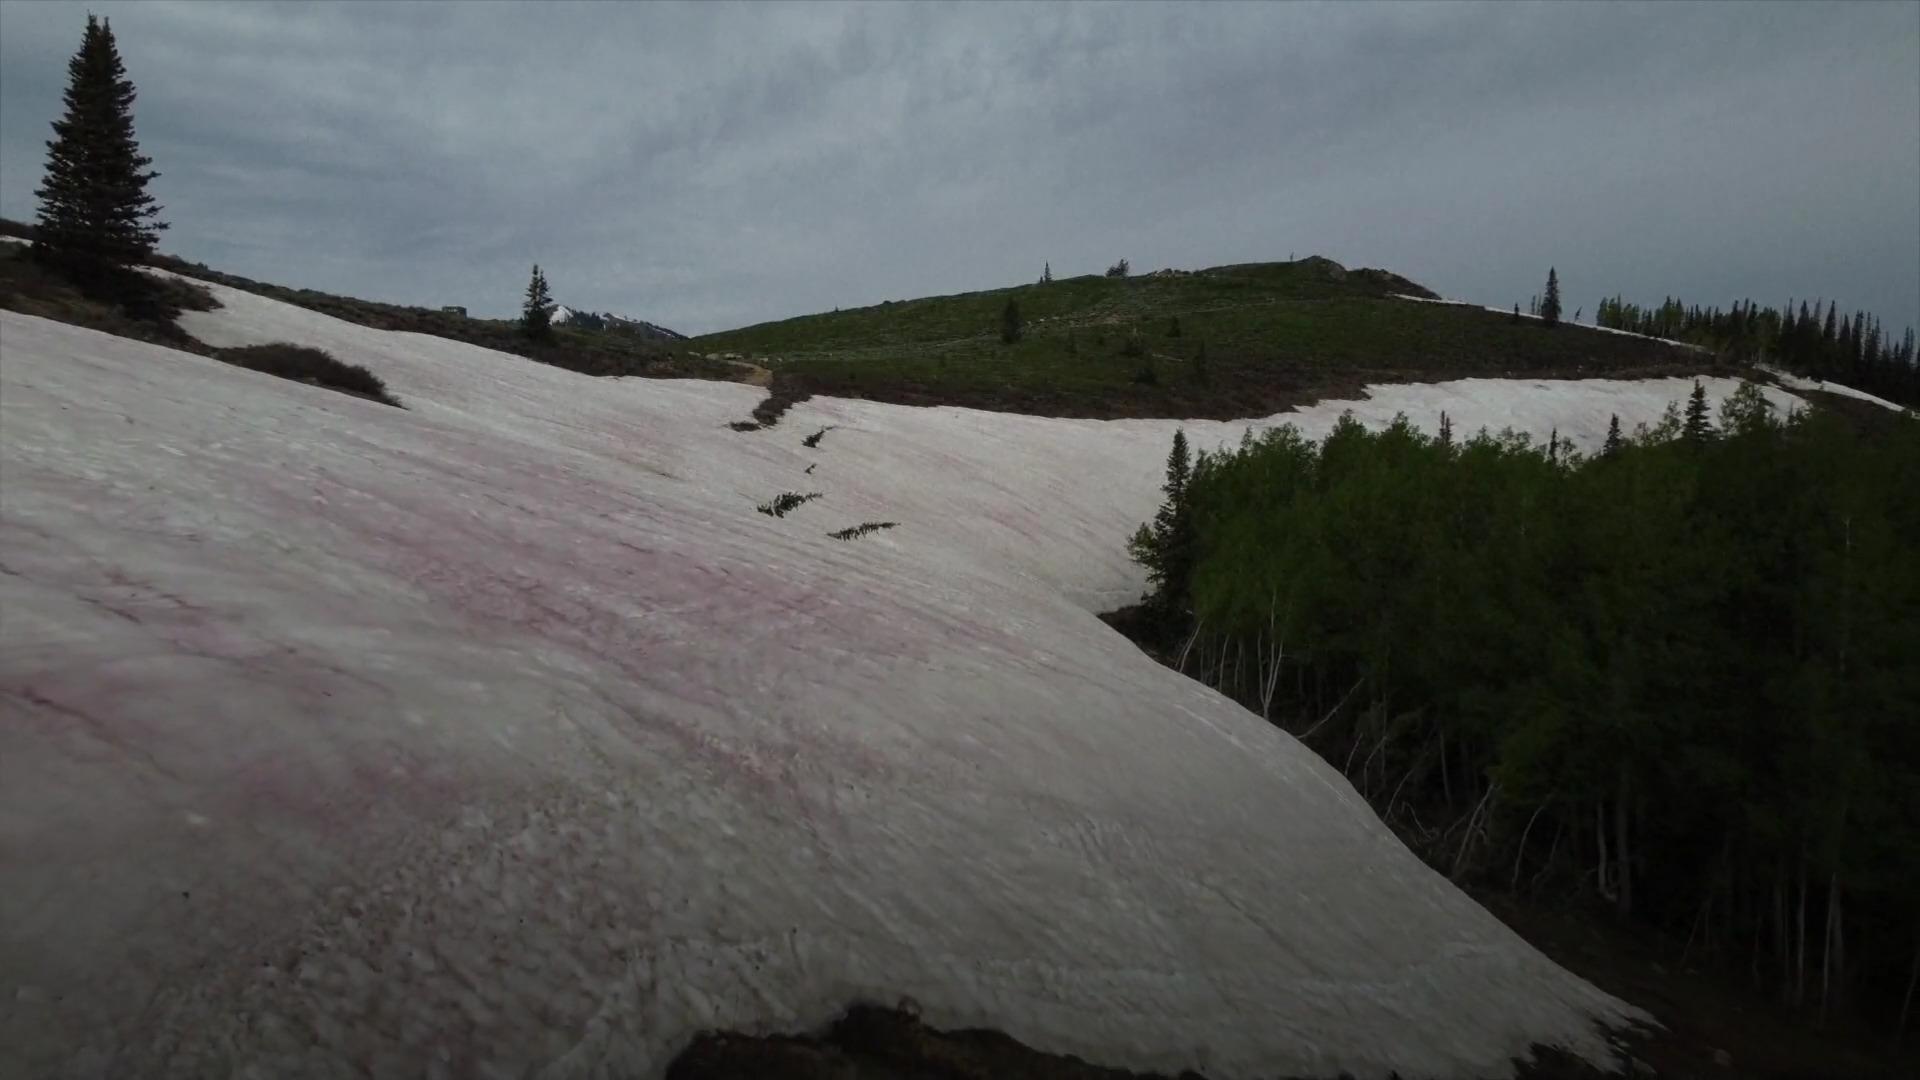 Las algas cambian la nieve de otro color, y la nieve se vuelve rosa